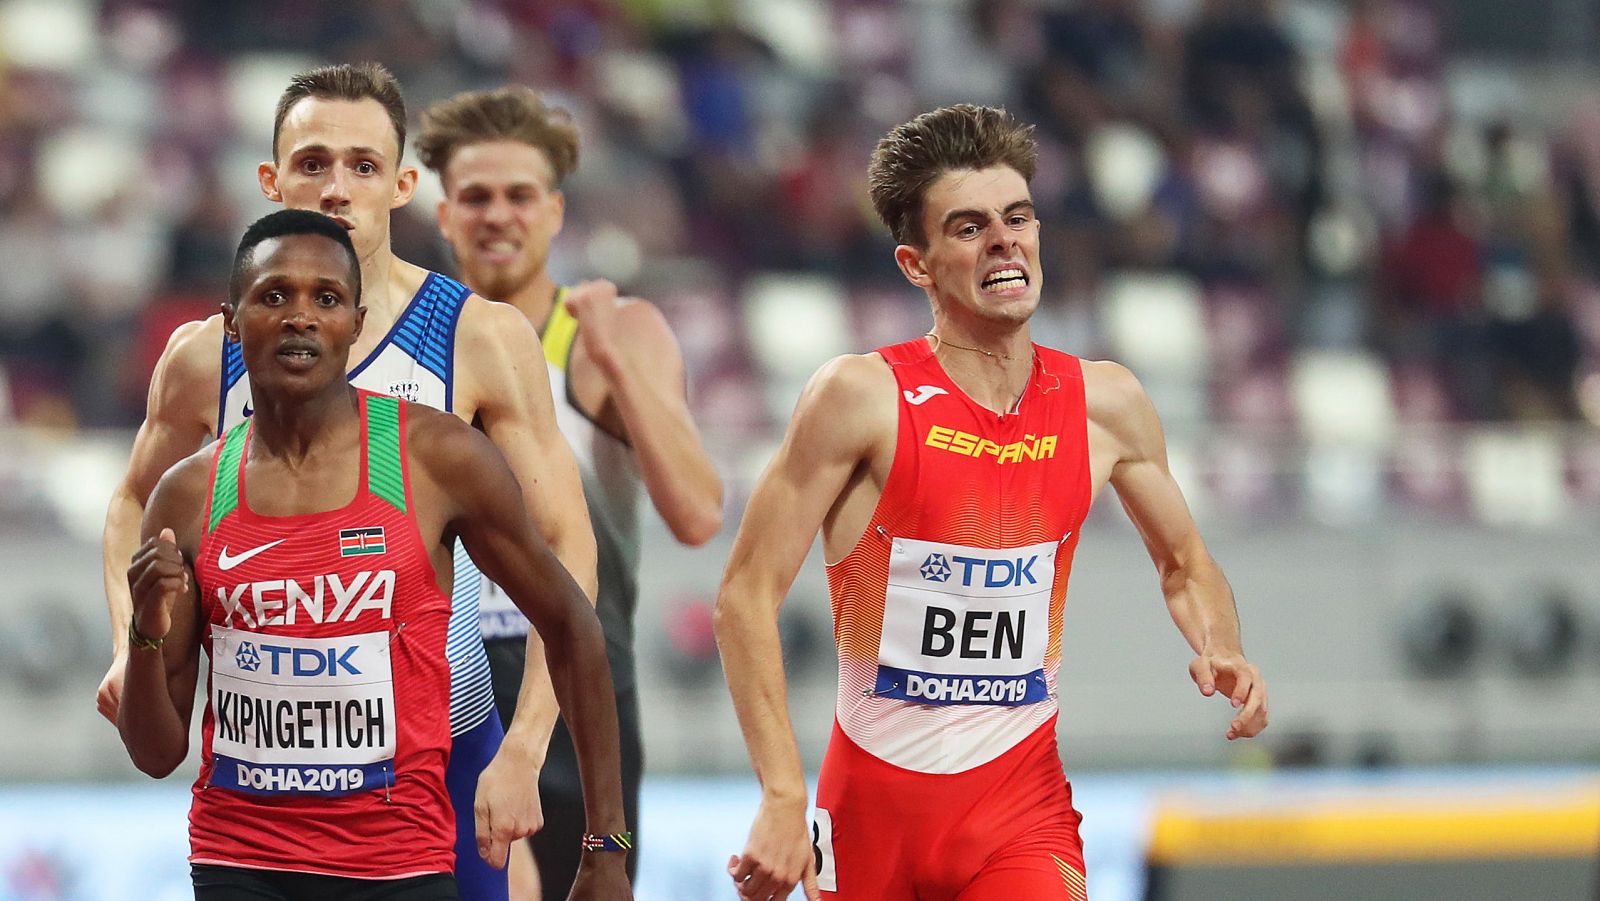 Adrián Ben y Álvaro de Arriba, clasificados para las semifinales de 800m